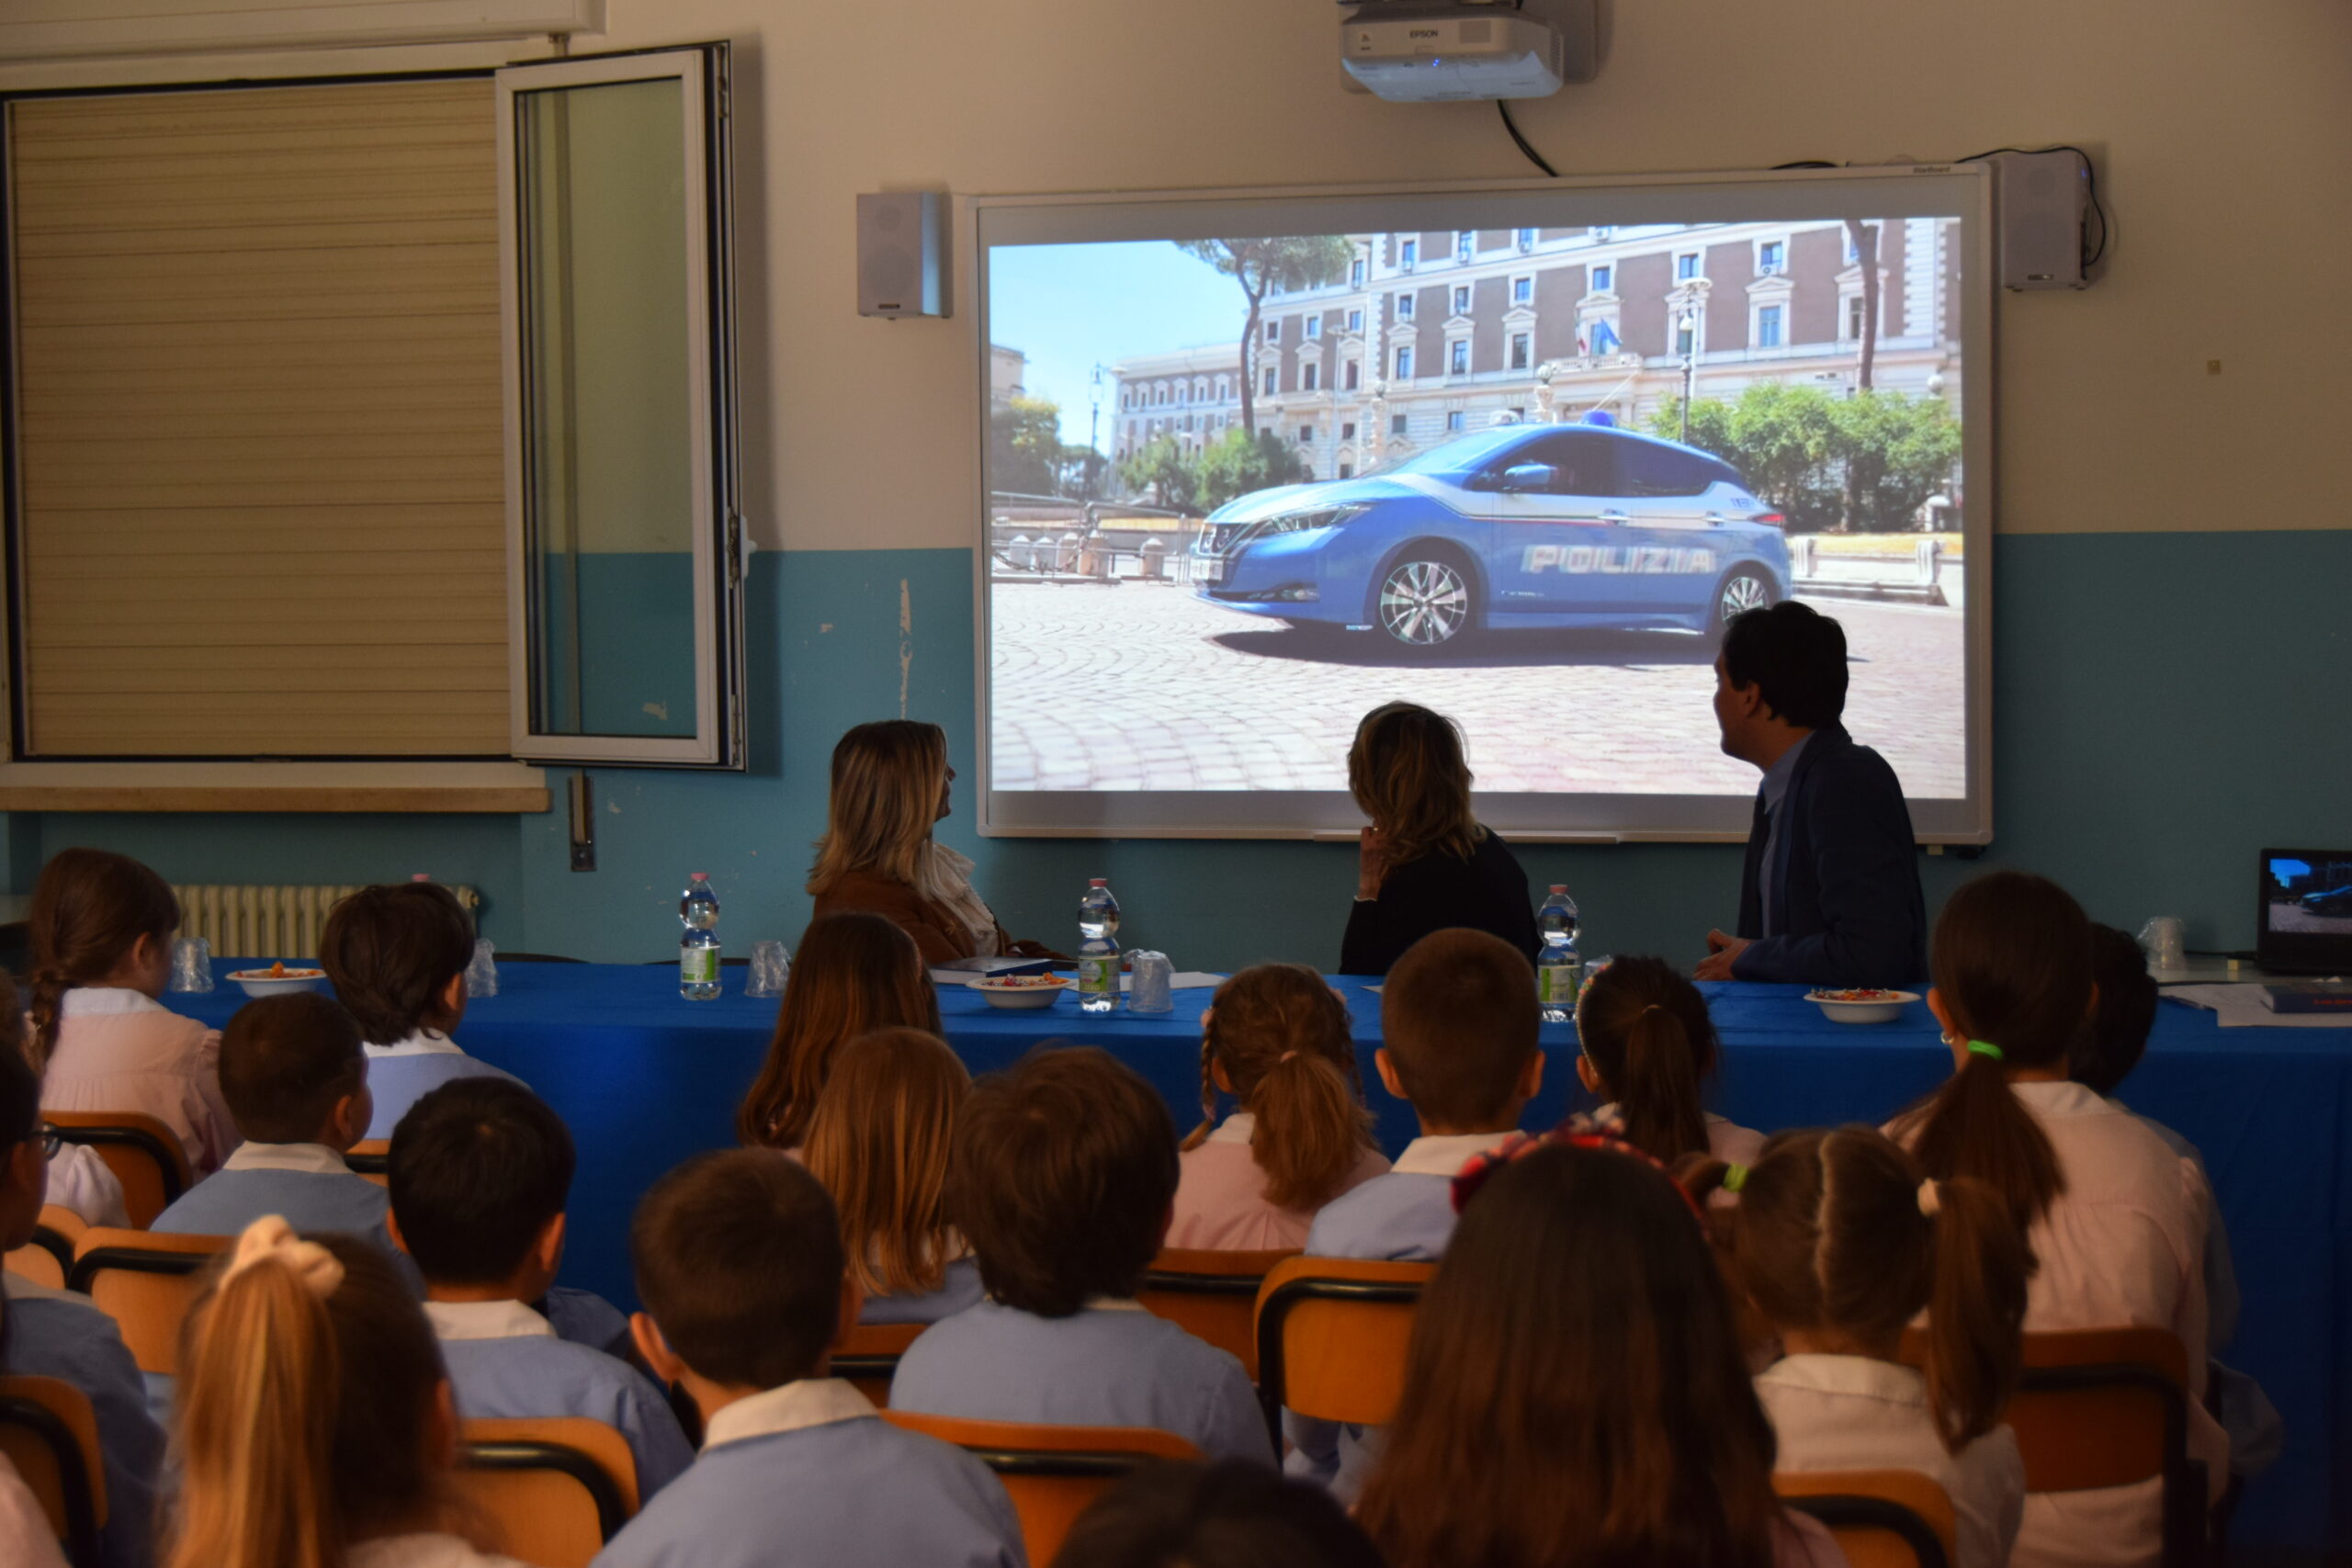 Presentata anche a Rimini l’agenda scolastica “Il Mio Diario”